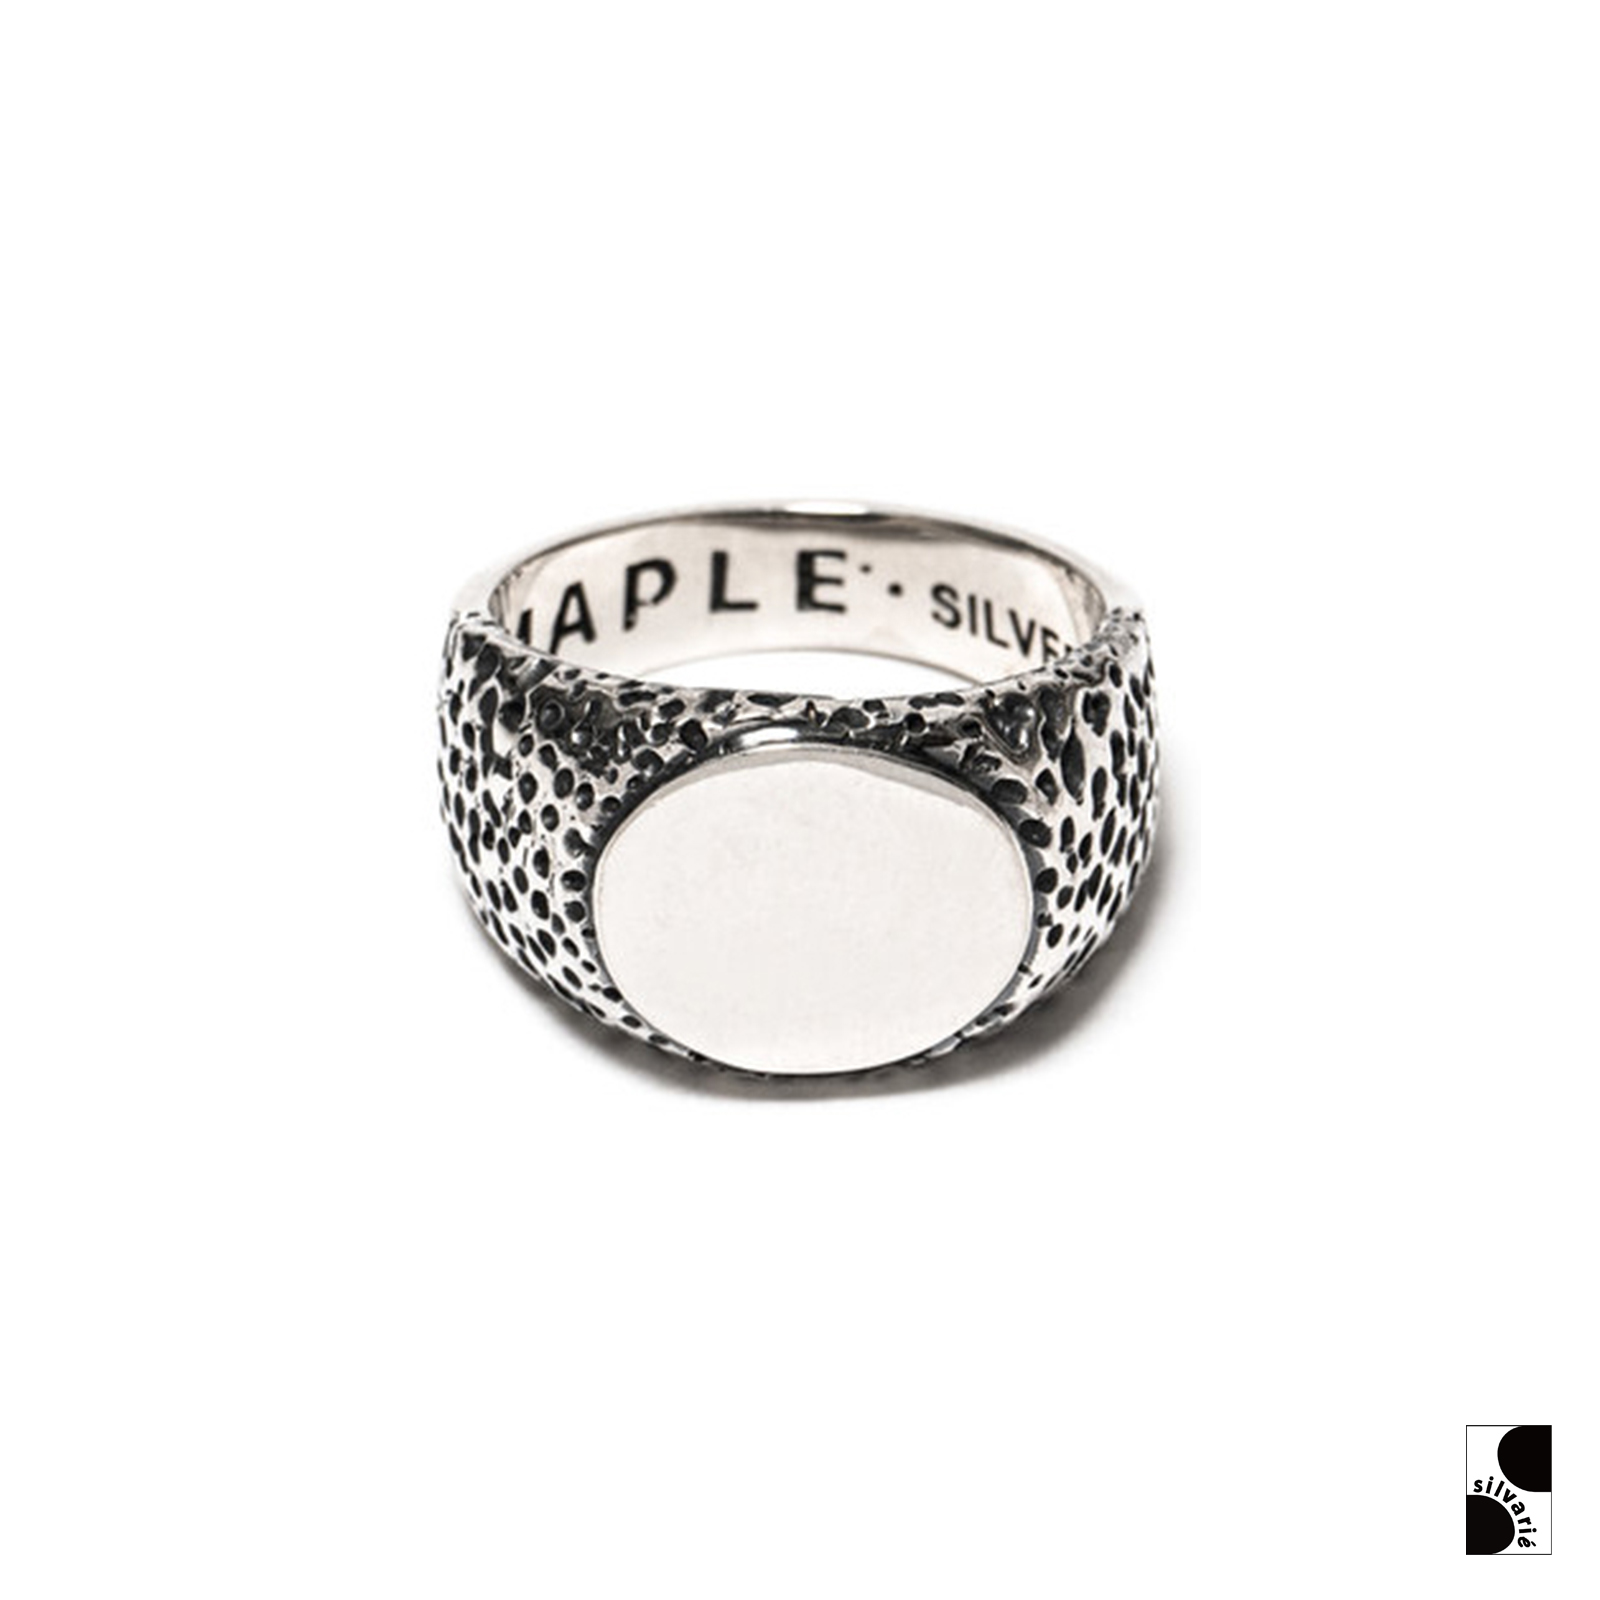 纯银14K镀金潮流配饰男女 1970年代掘金主题戒指 =silvarie=MAPLE